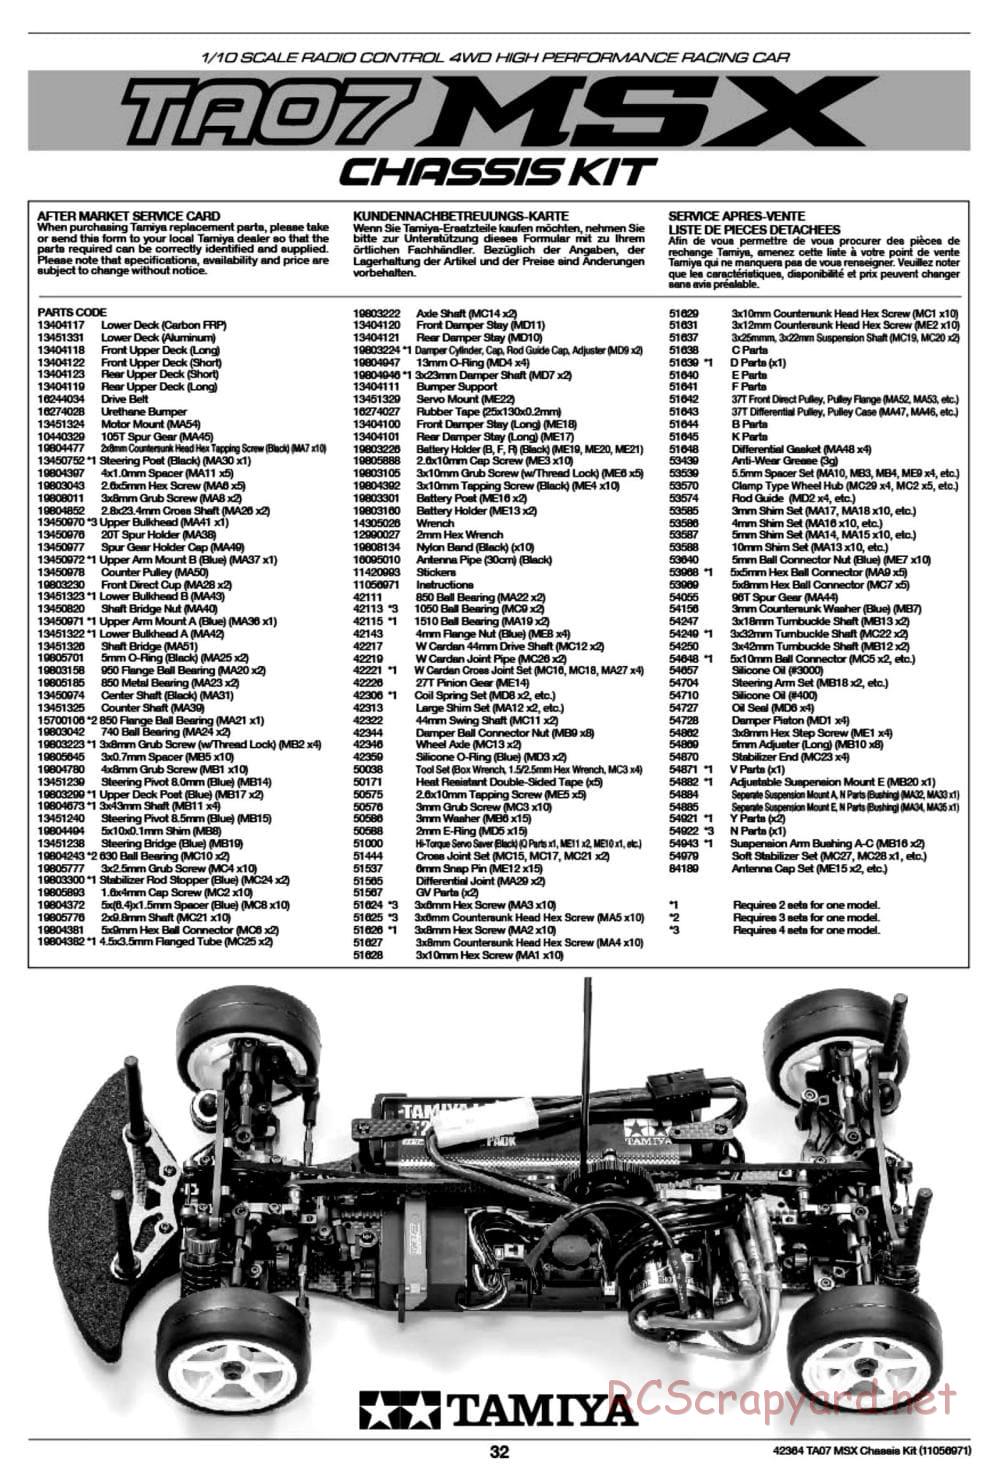 Tamiya - TA07 MSX Chassis - Manual - Page 32